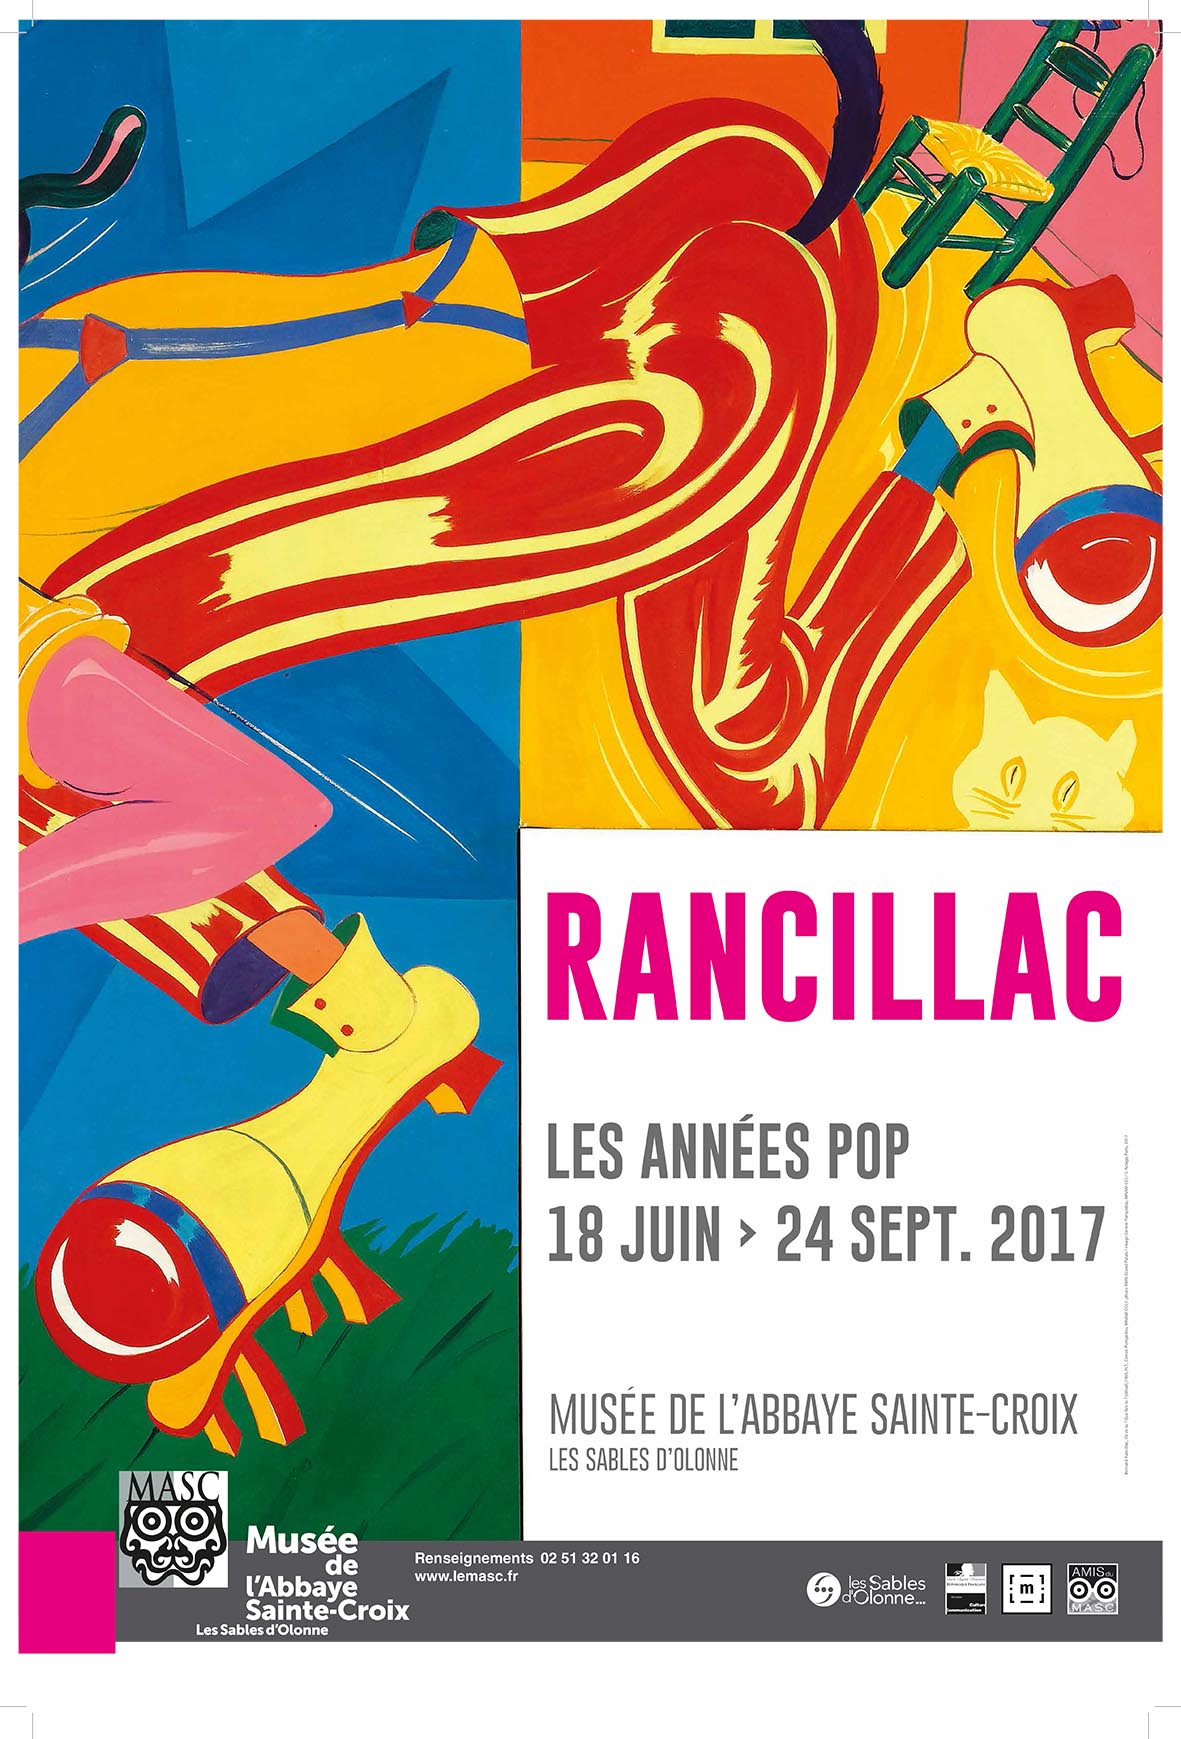 Les années pop, exposition de Bernard Rancillac du 18 juin au 24 septembre 2017 Musée de l' Abbaye Sainte-Croix